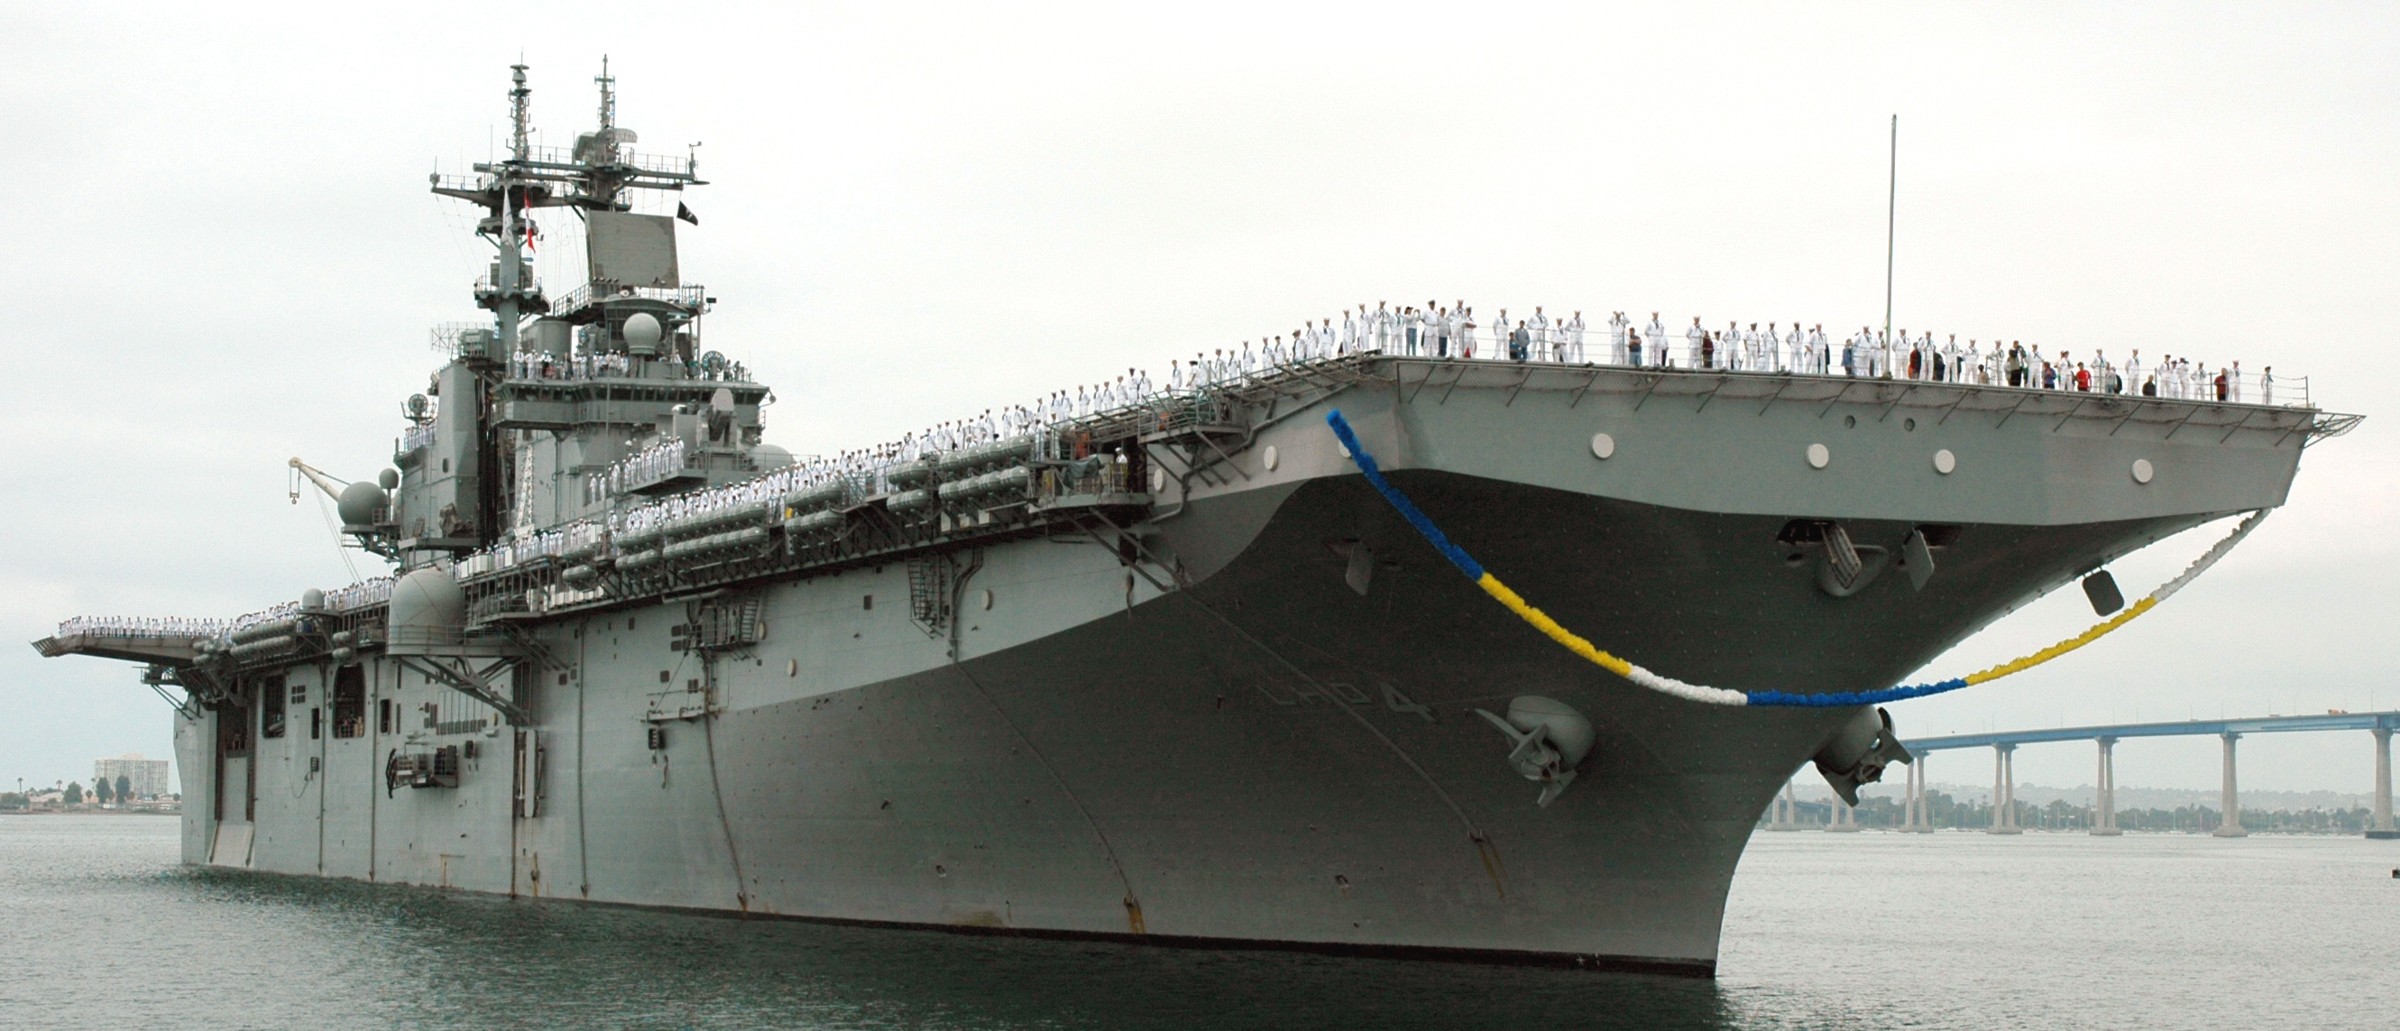 lhd-4 uss boxer wasp class amphibious assault ship dock landing us navy san diego 24